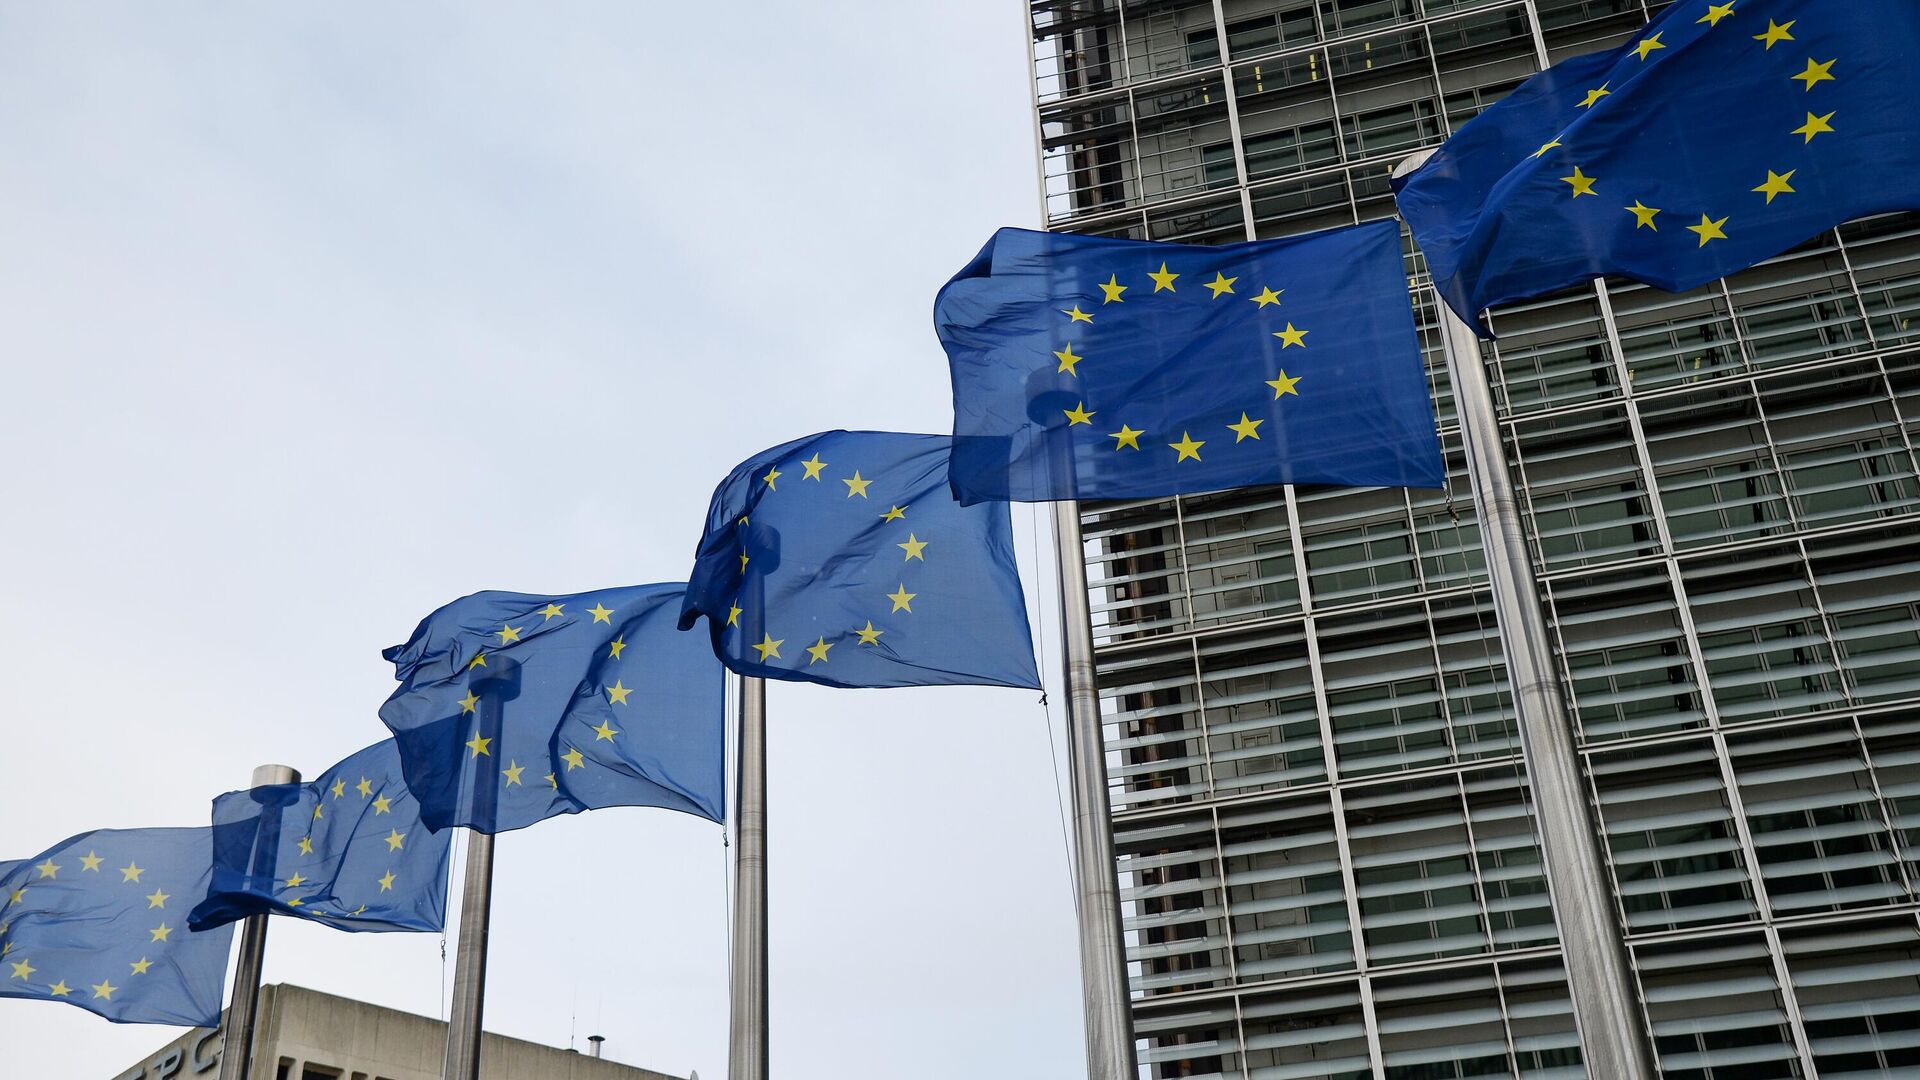 Флаги Евросоюза возле здания штаб-квартиры Европейского парламента в Брюсселе - РИА Новости, 1920, 23.10.2021